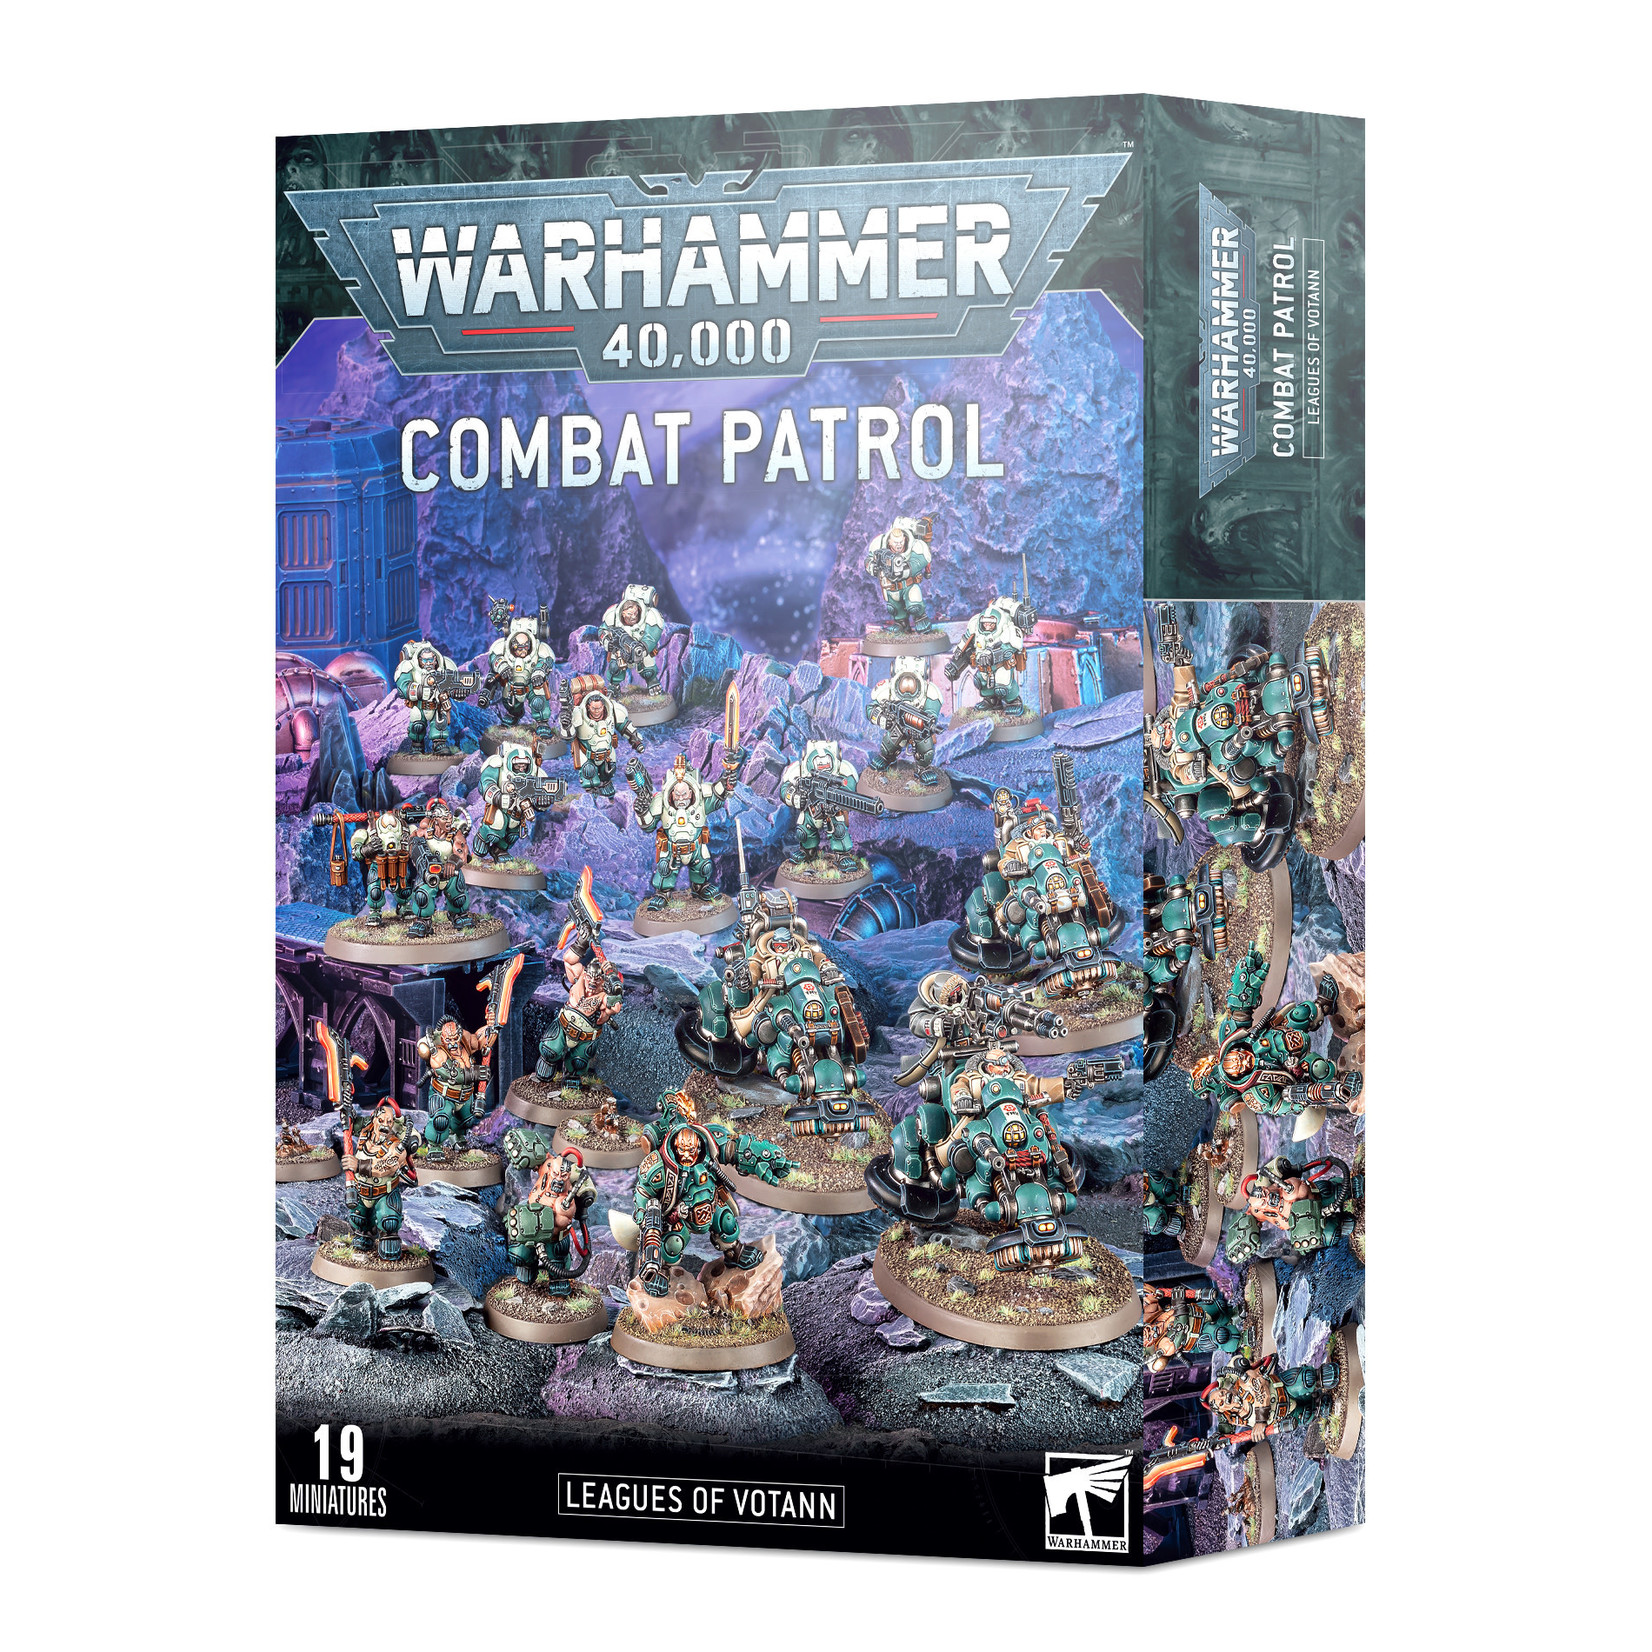 Warhammer 40k Warhammer 40k: Leagues of Votann: Combat Patrol